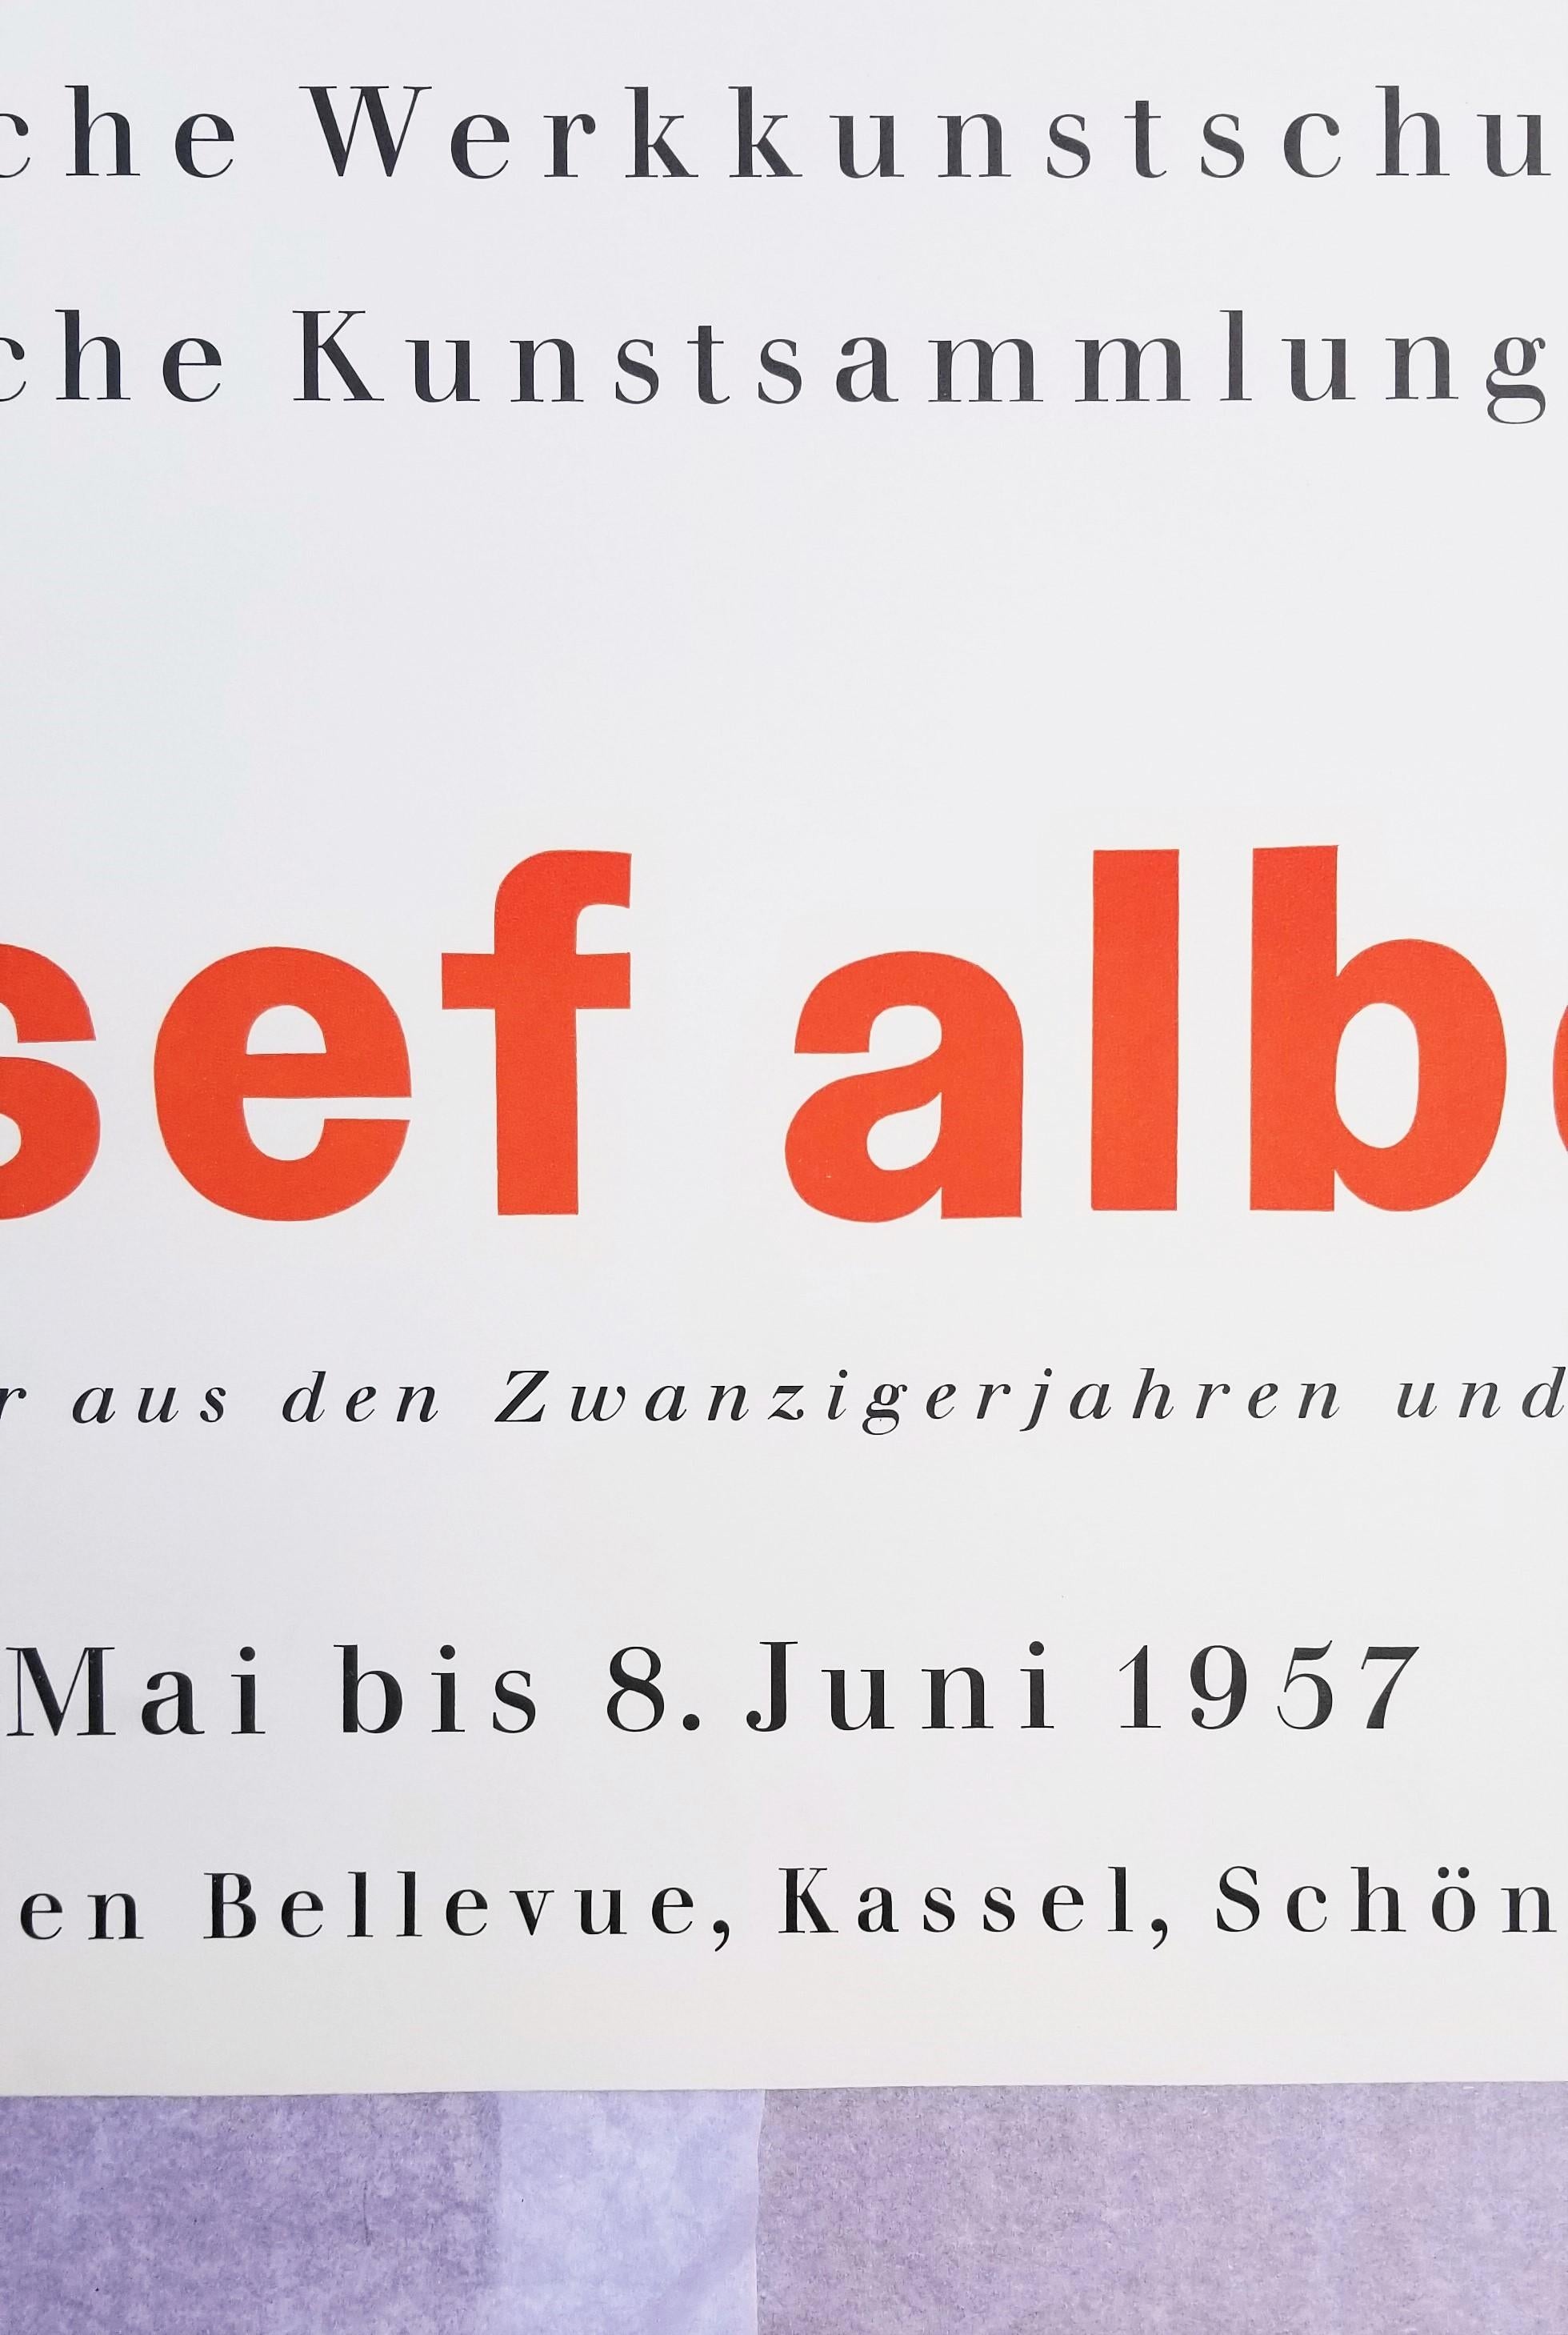 Staatliche Werkkunstschule Kassel (Prefatio) Poster /// Bauhaus Josef Albers Art For Sale 4